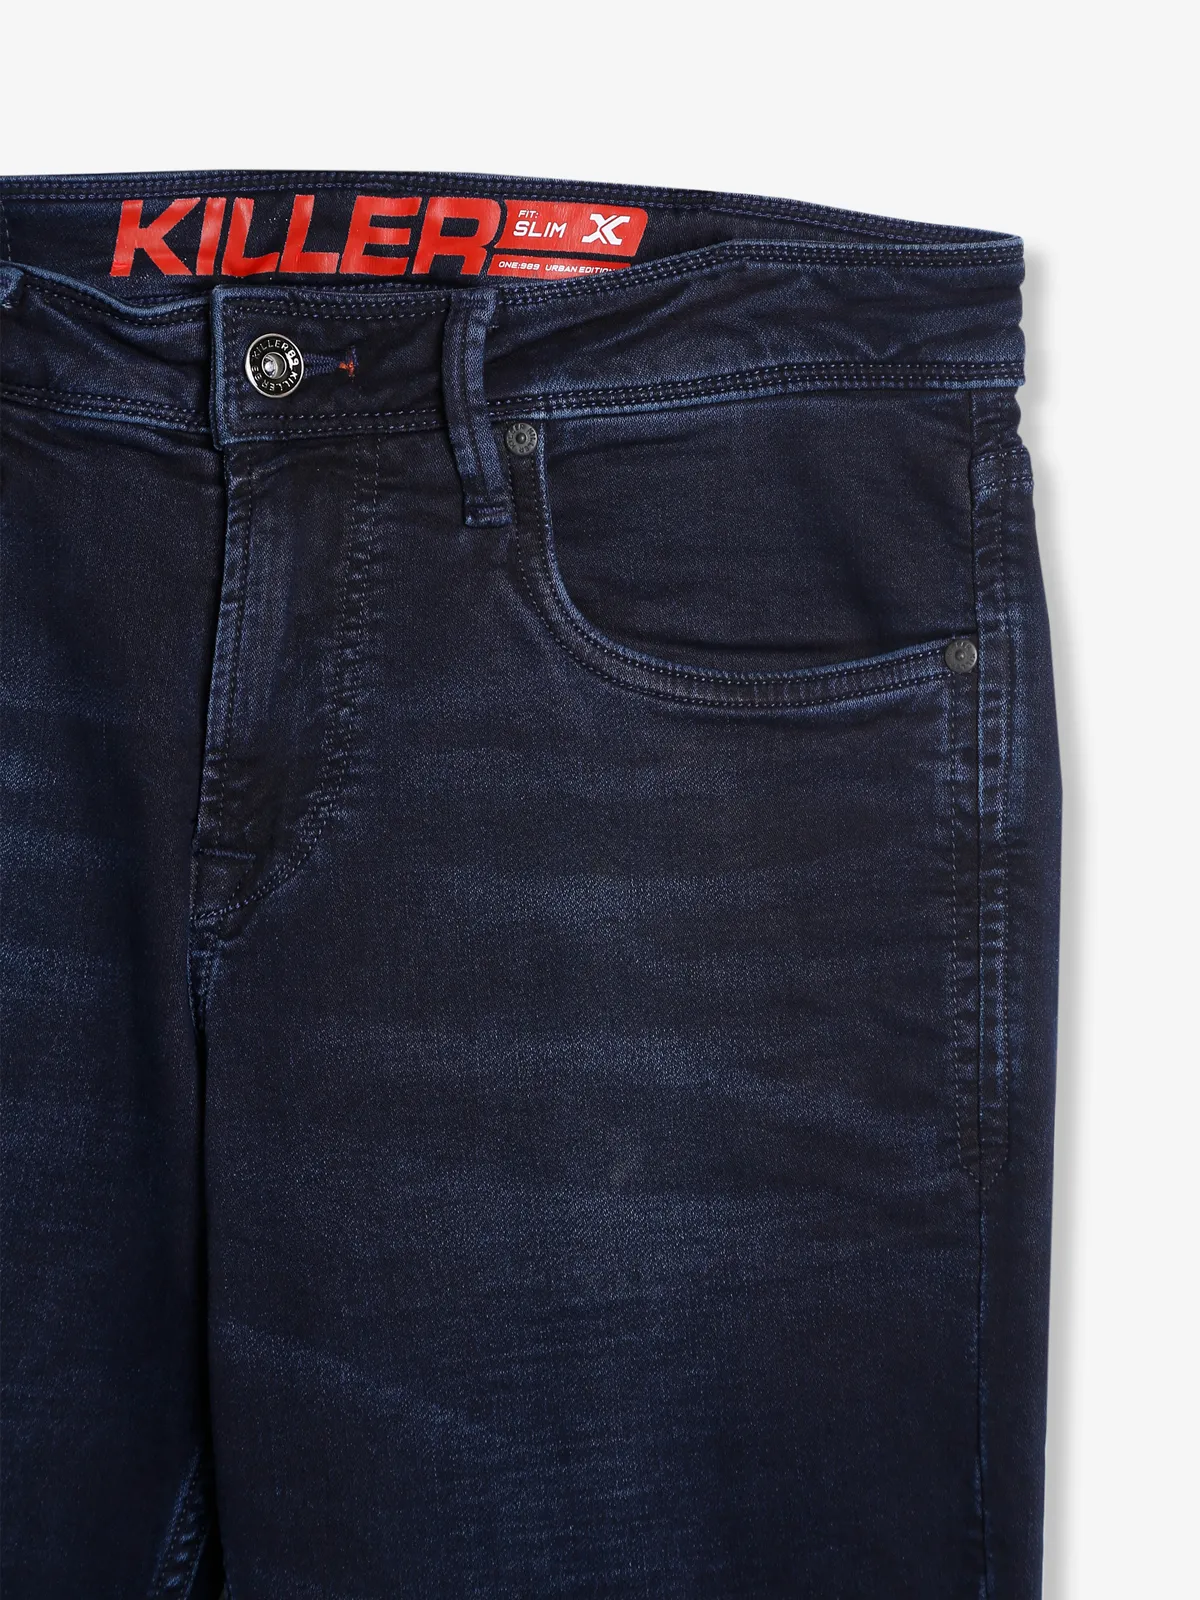 Killer dark navy solid jeans